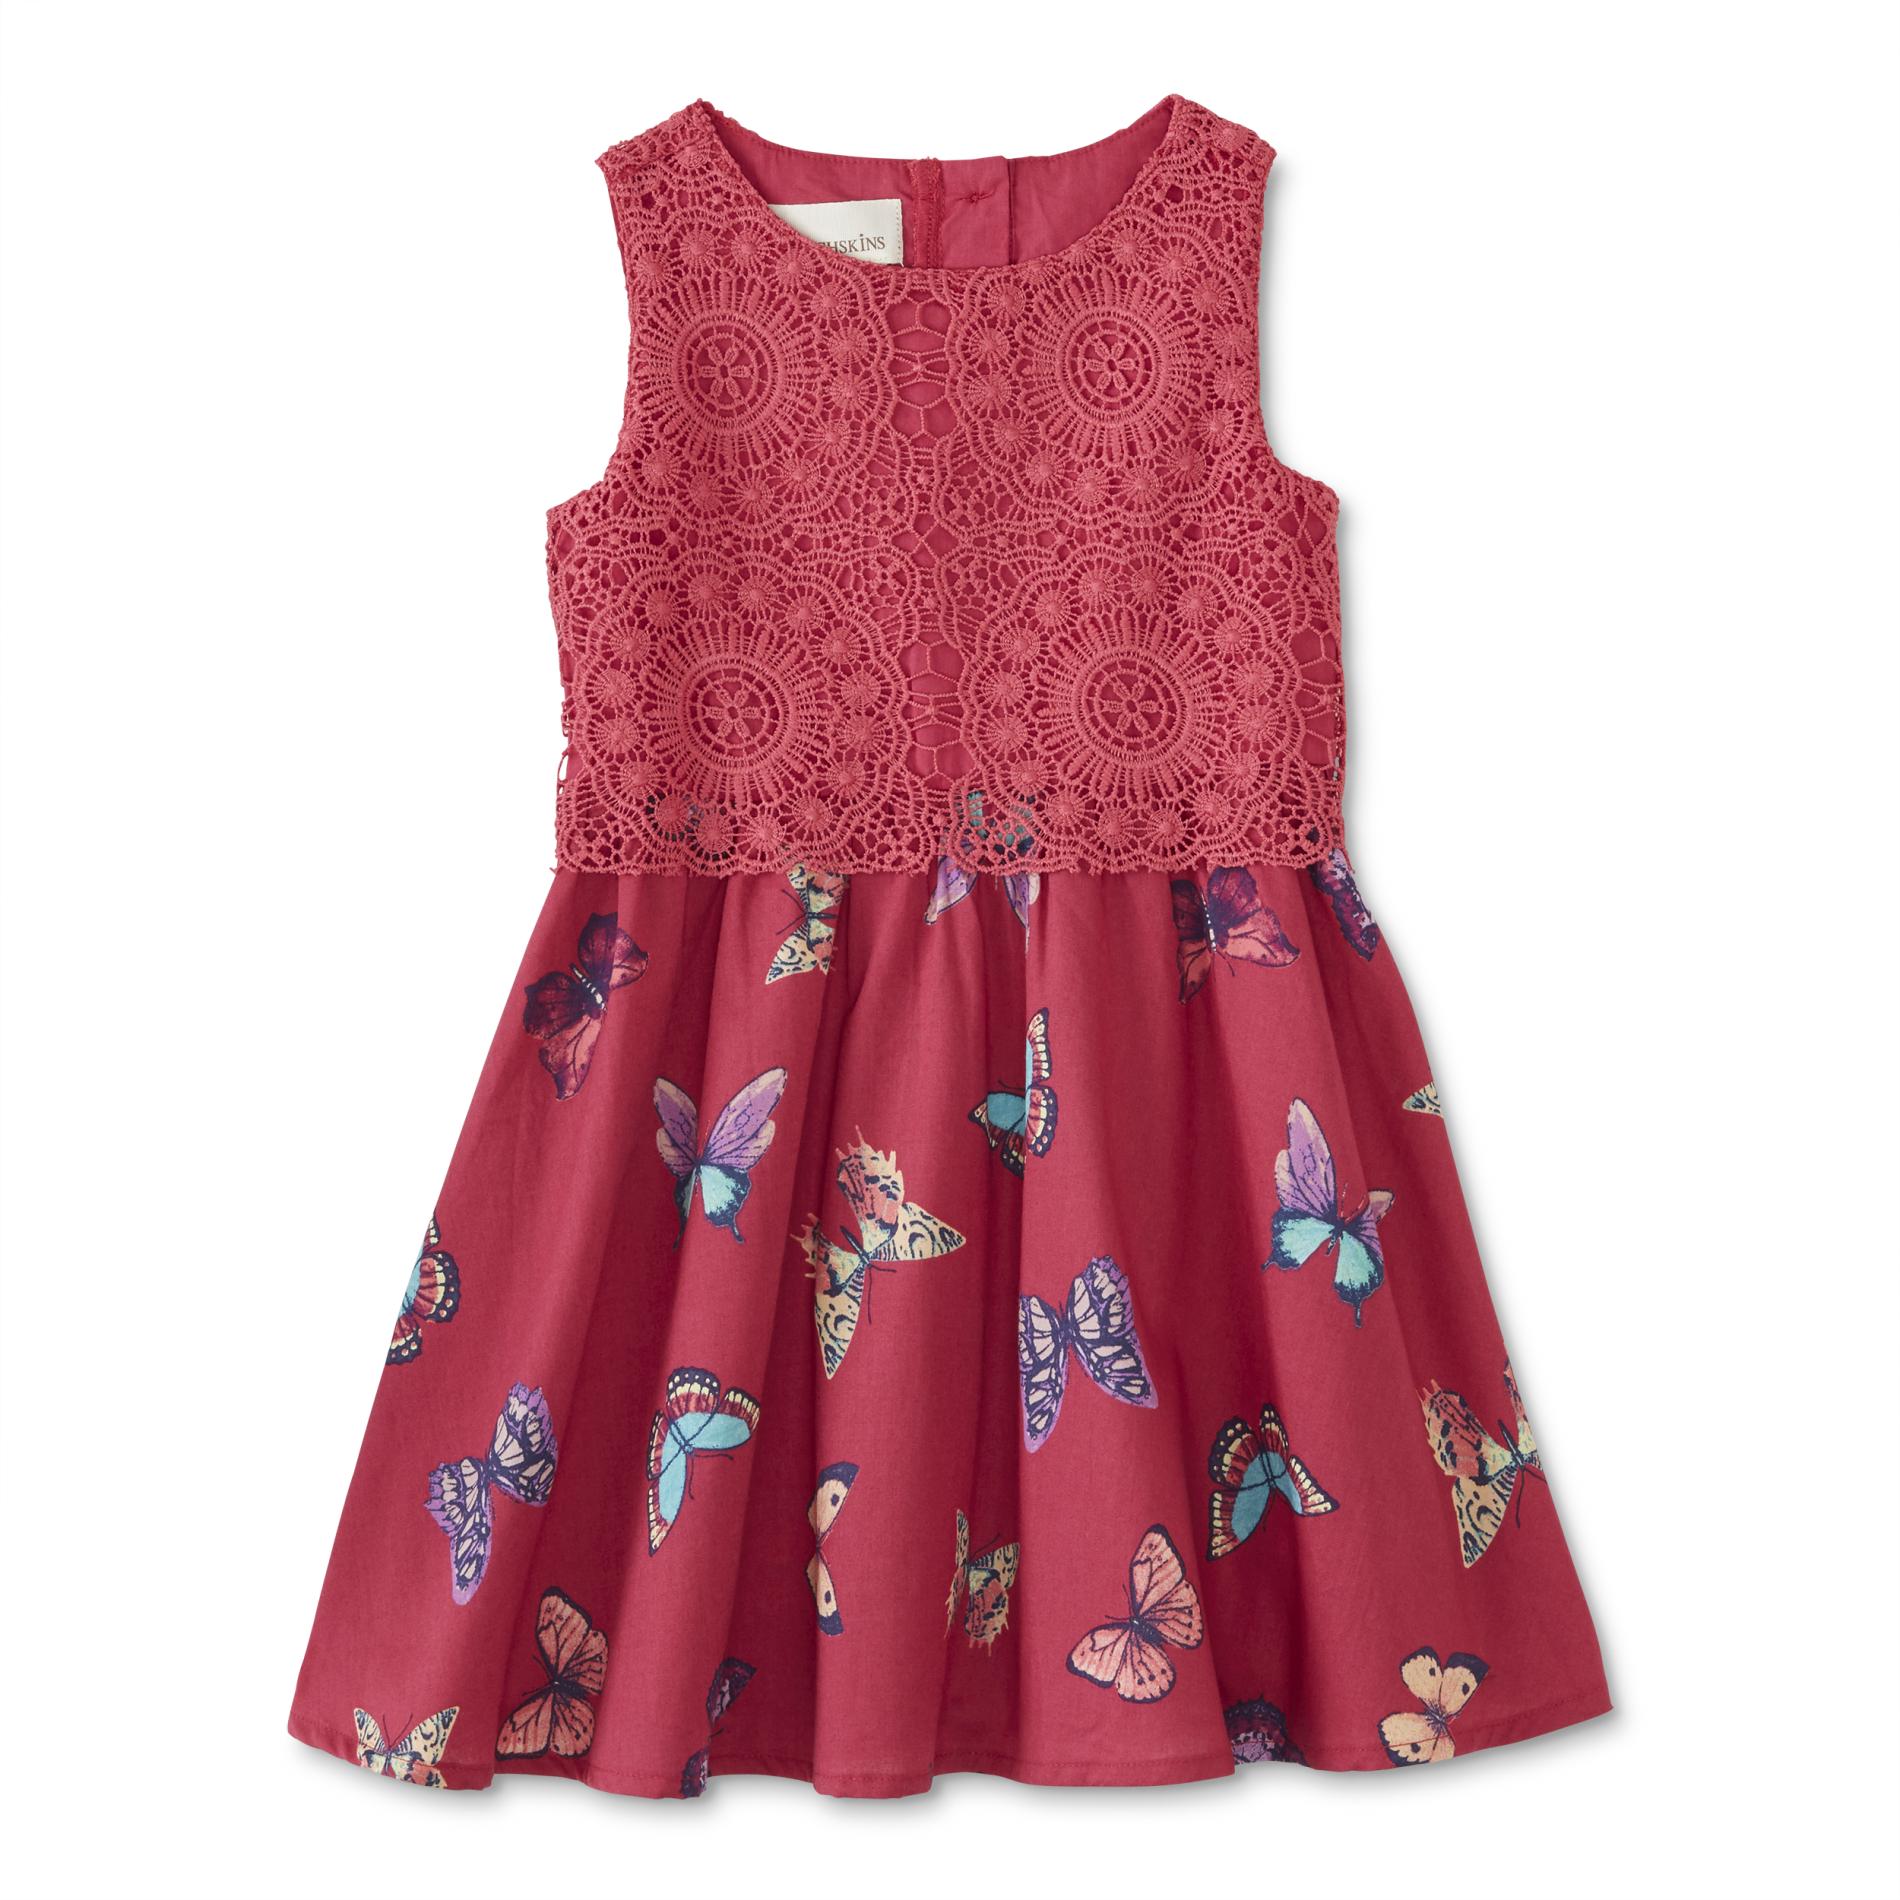 Toughskins Infant & Toddler Girls' Crochet Blouson Dress - Butterflies